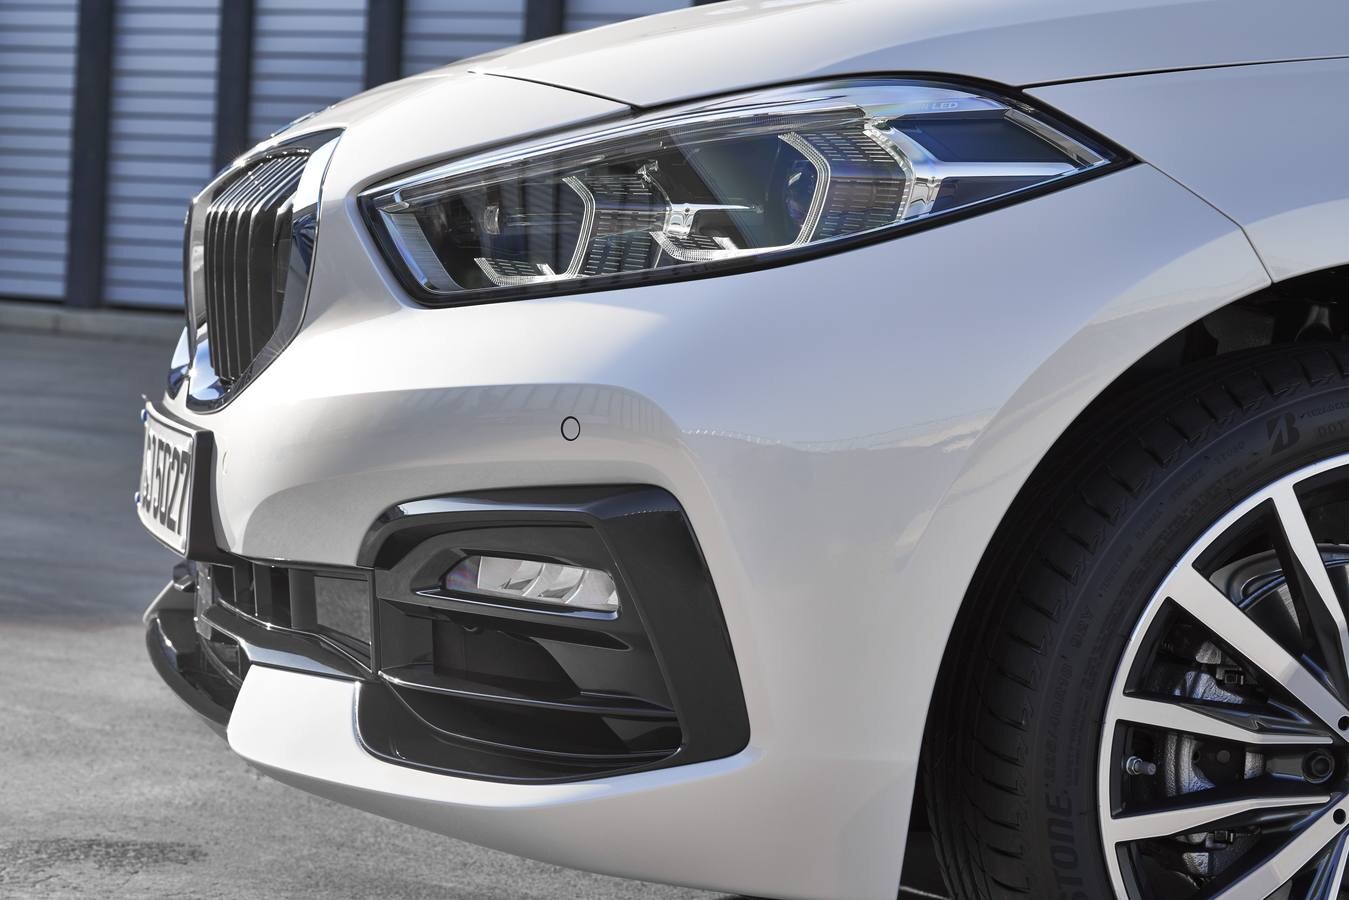 BMW empezará a vender el nuevo Serie 1 en octubre. Se trata de la tercera generación del compacto germano, ahora con tracción delantera lo que permite mayor capacidad interior y más volumen de maletero.